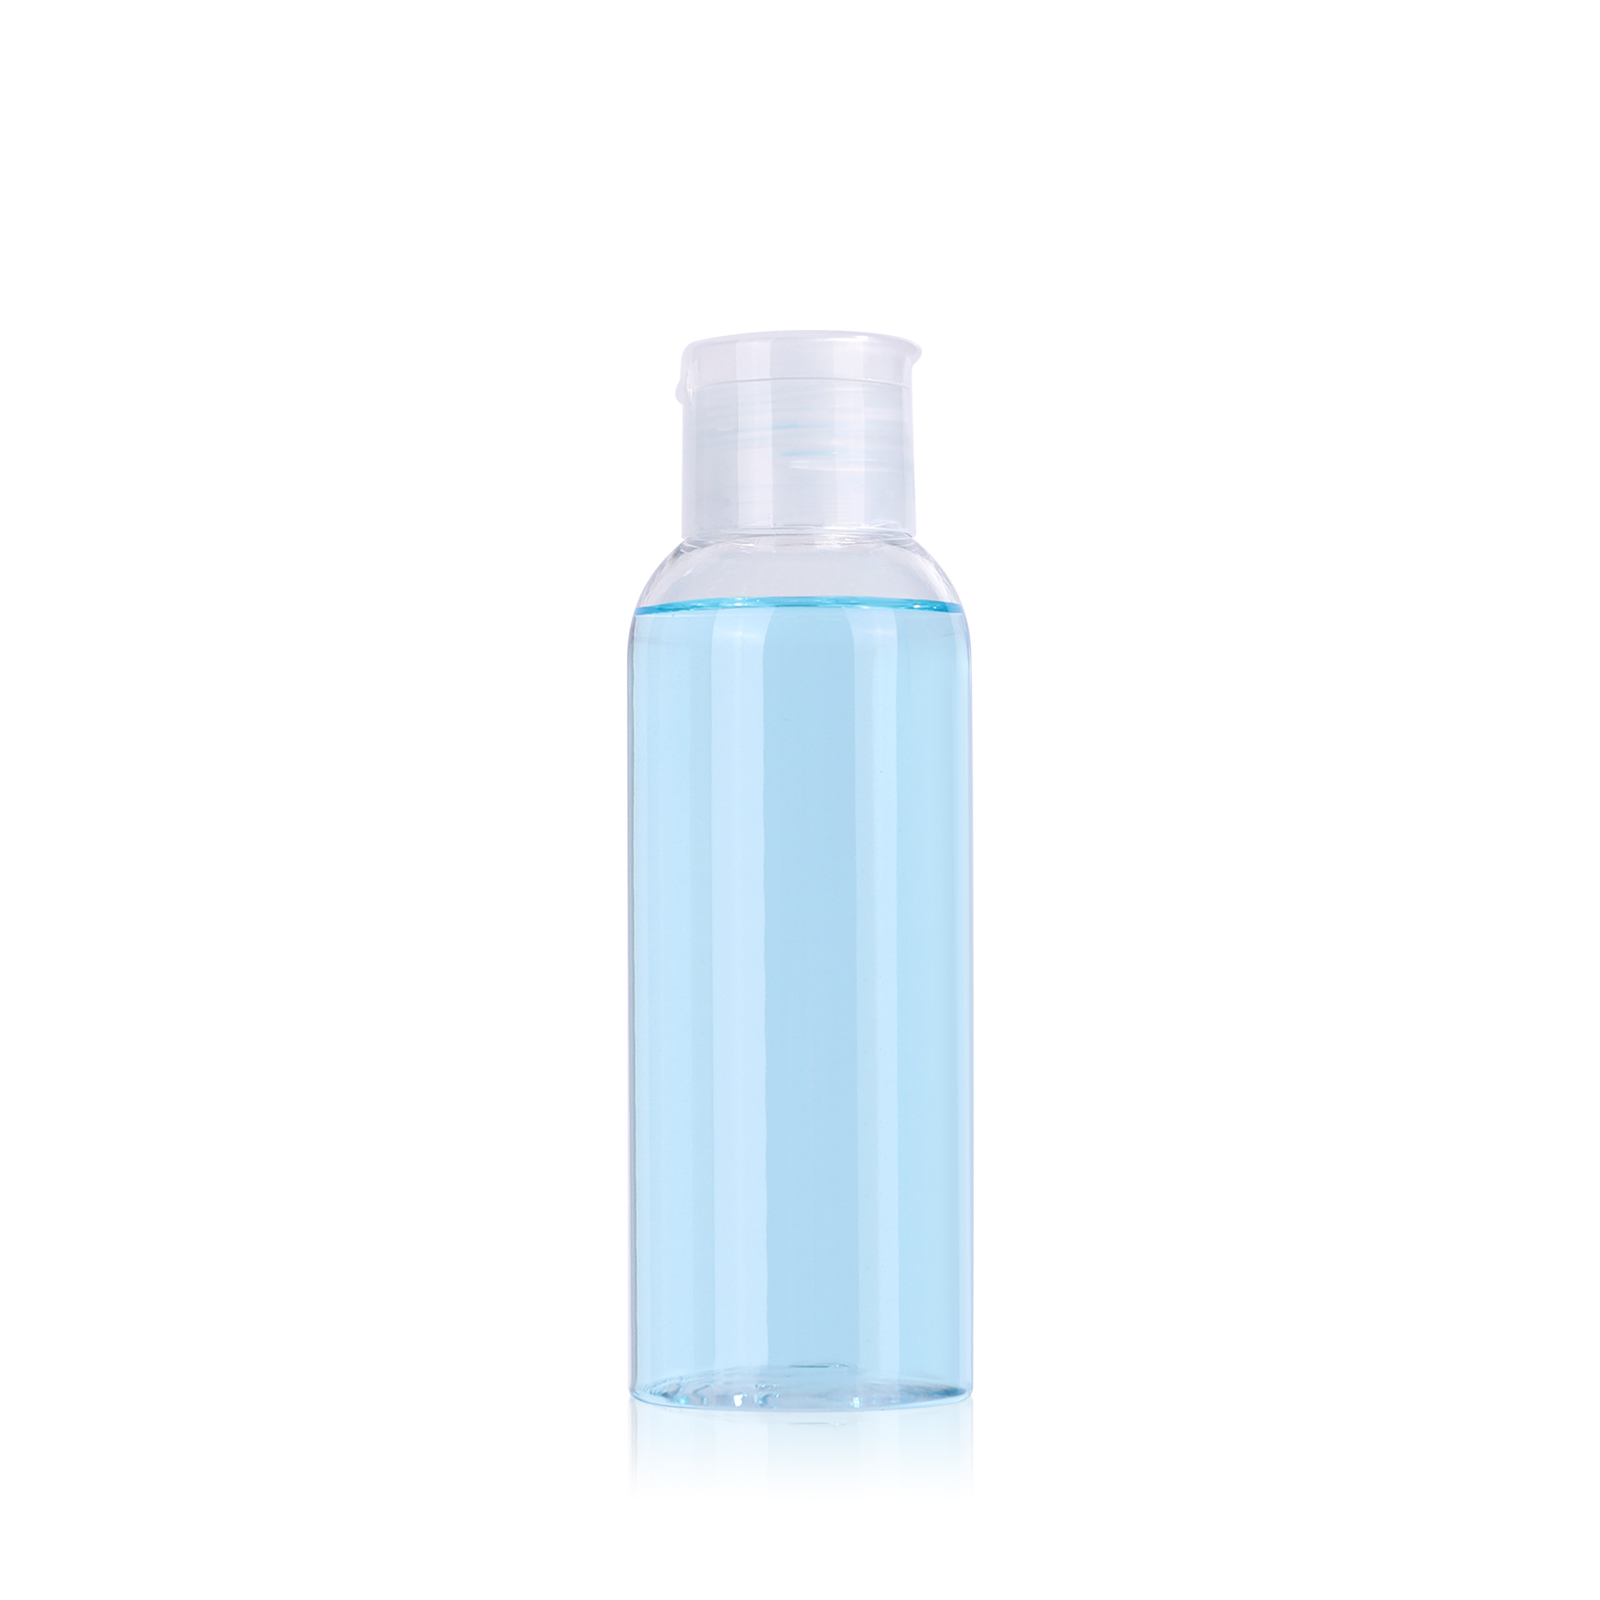 50 ml empty clear PET plastic hand sanitizer bottle with flip top cap